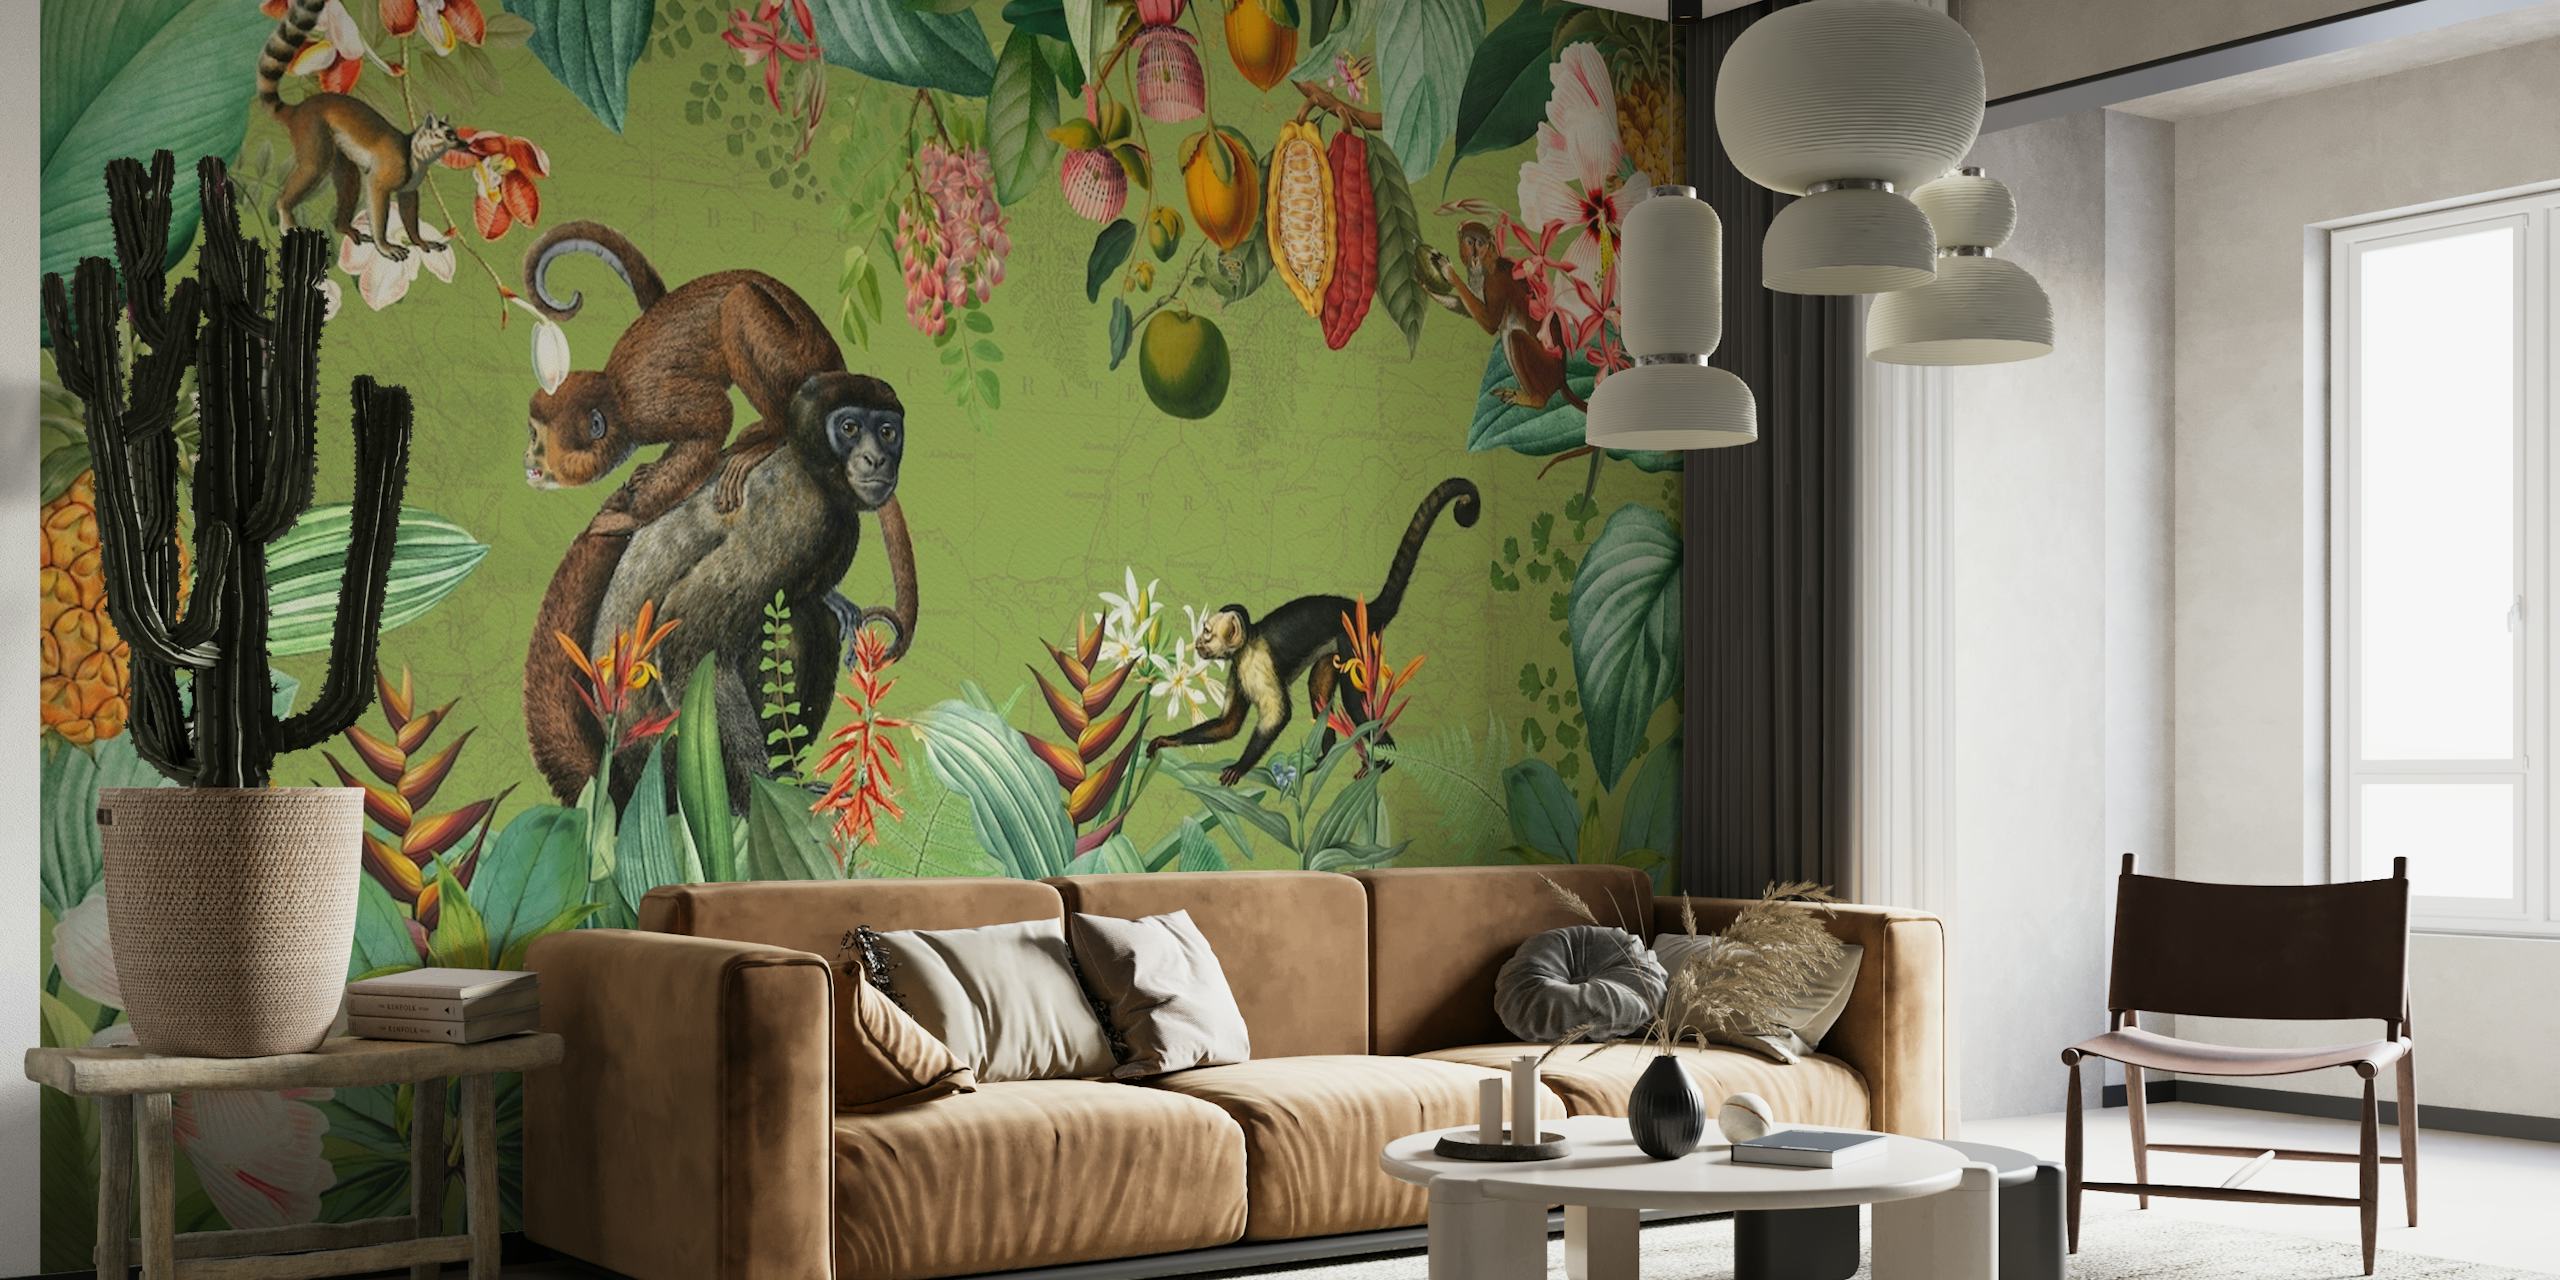 Un murale in stile vintage raffigurante scimmie e piante tropicali in un'ambientazione nella giungla africana